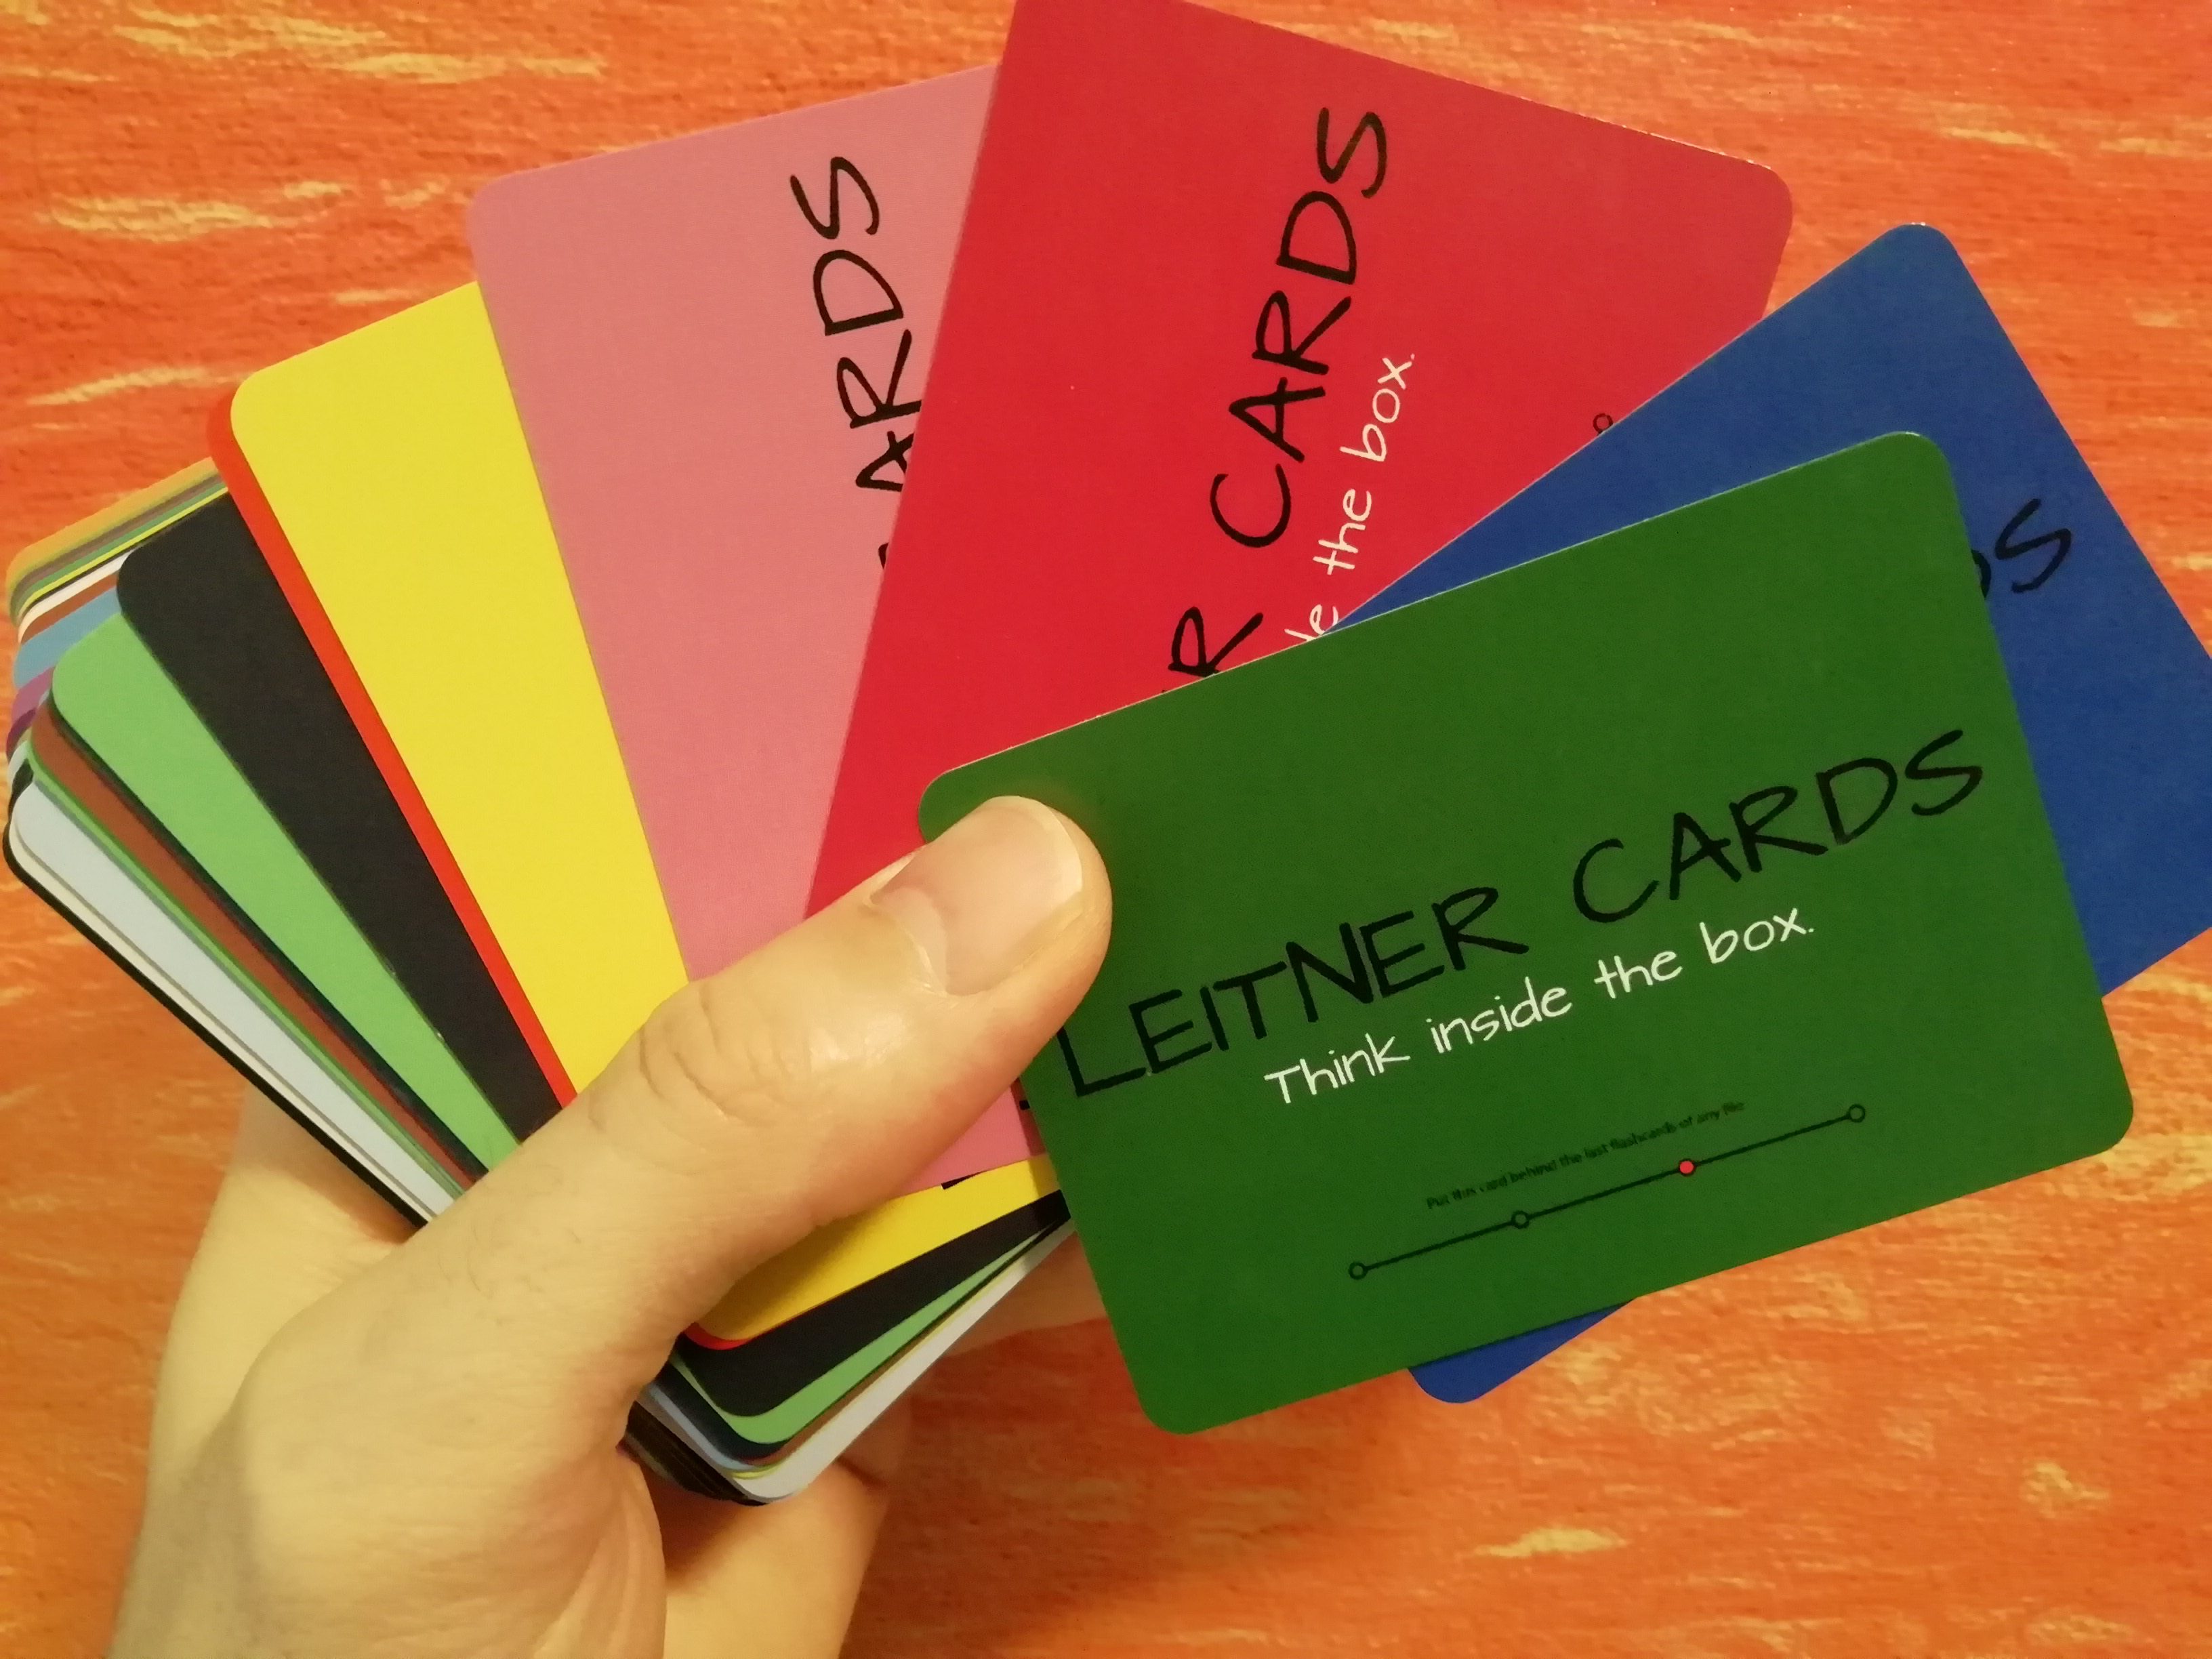 Leitner Cards